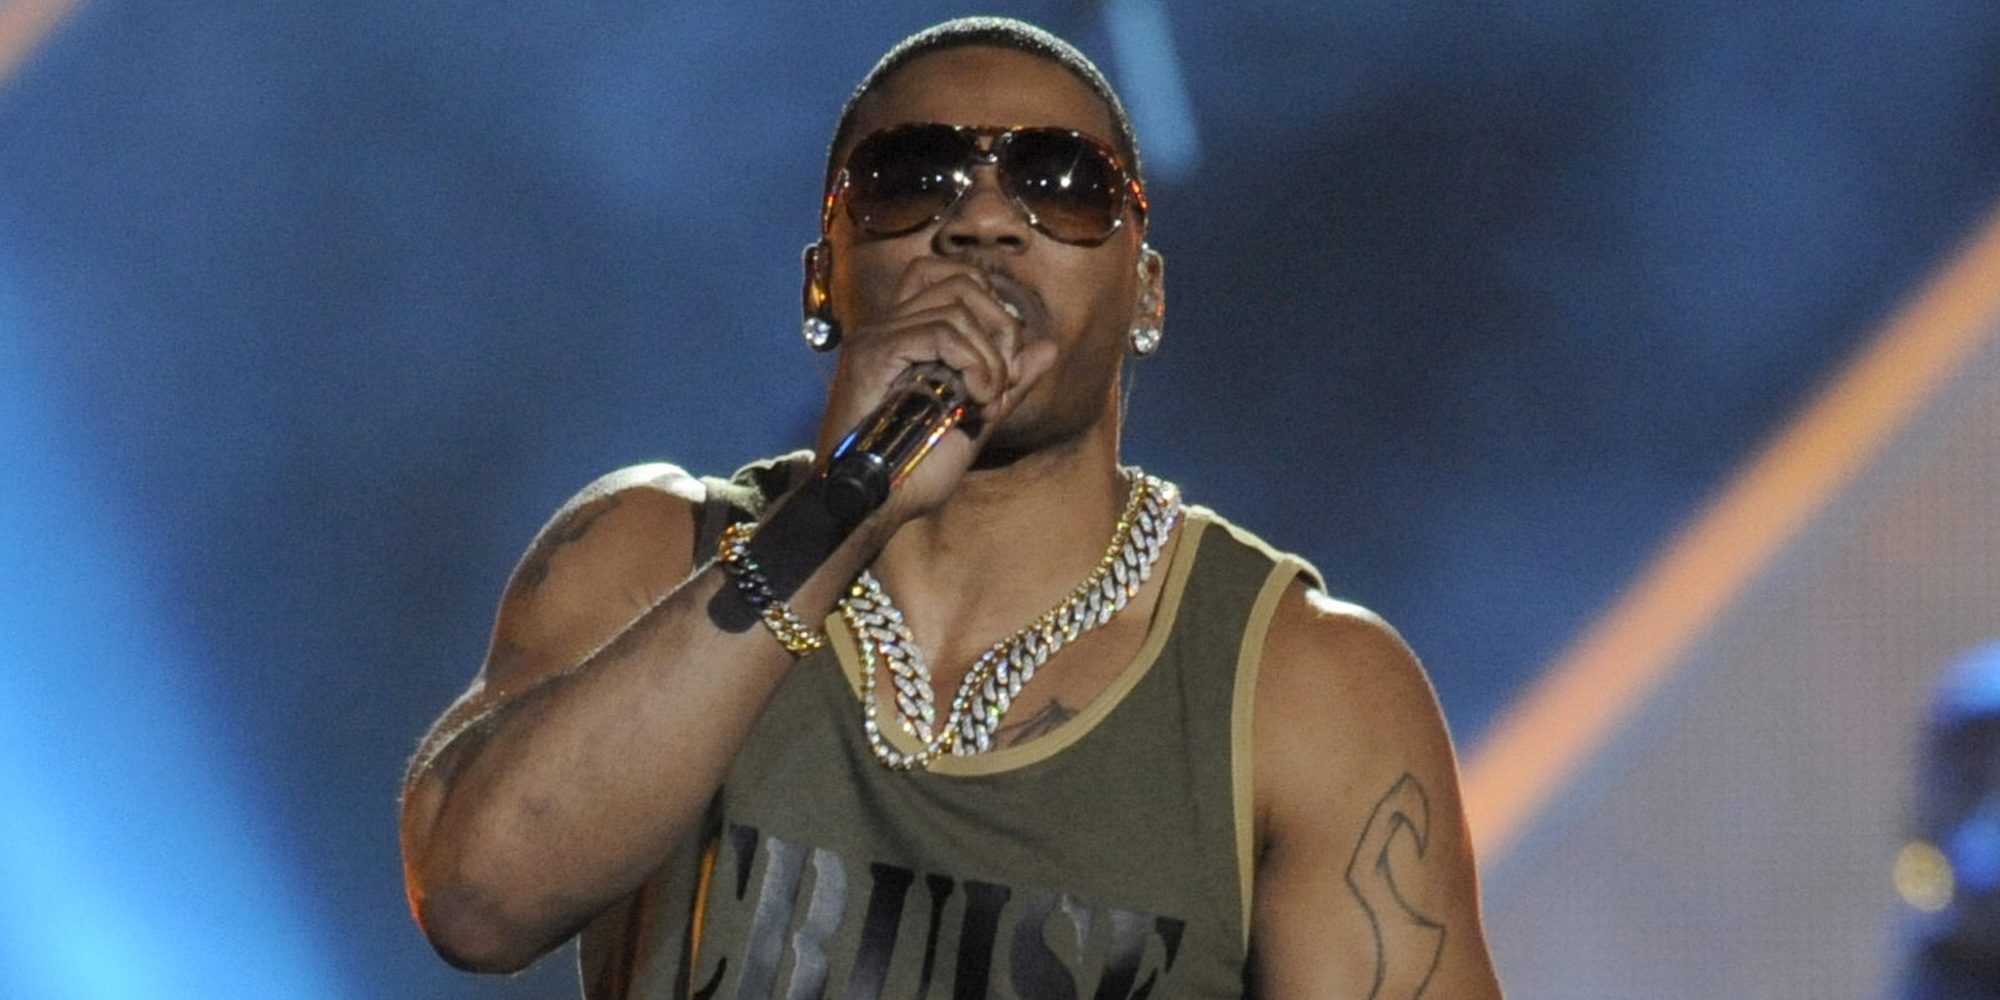 El rapero Nelly, arrestado por una presunta agresión sexual a una fan en su última gira